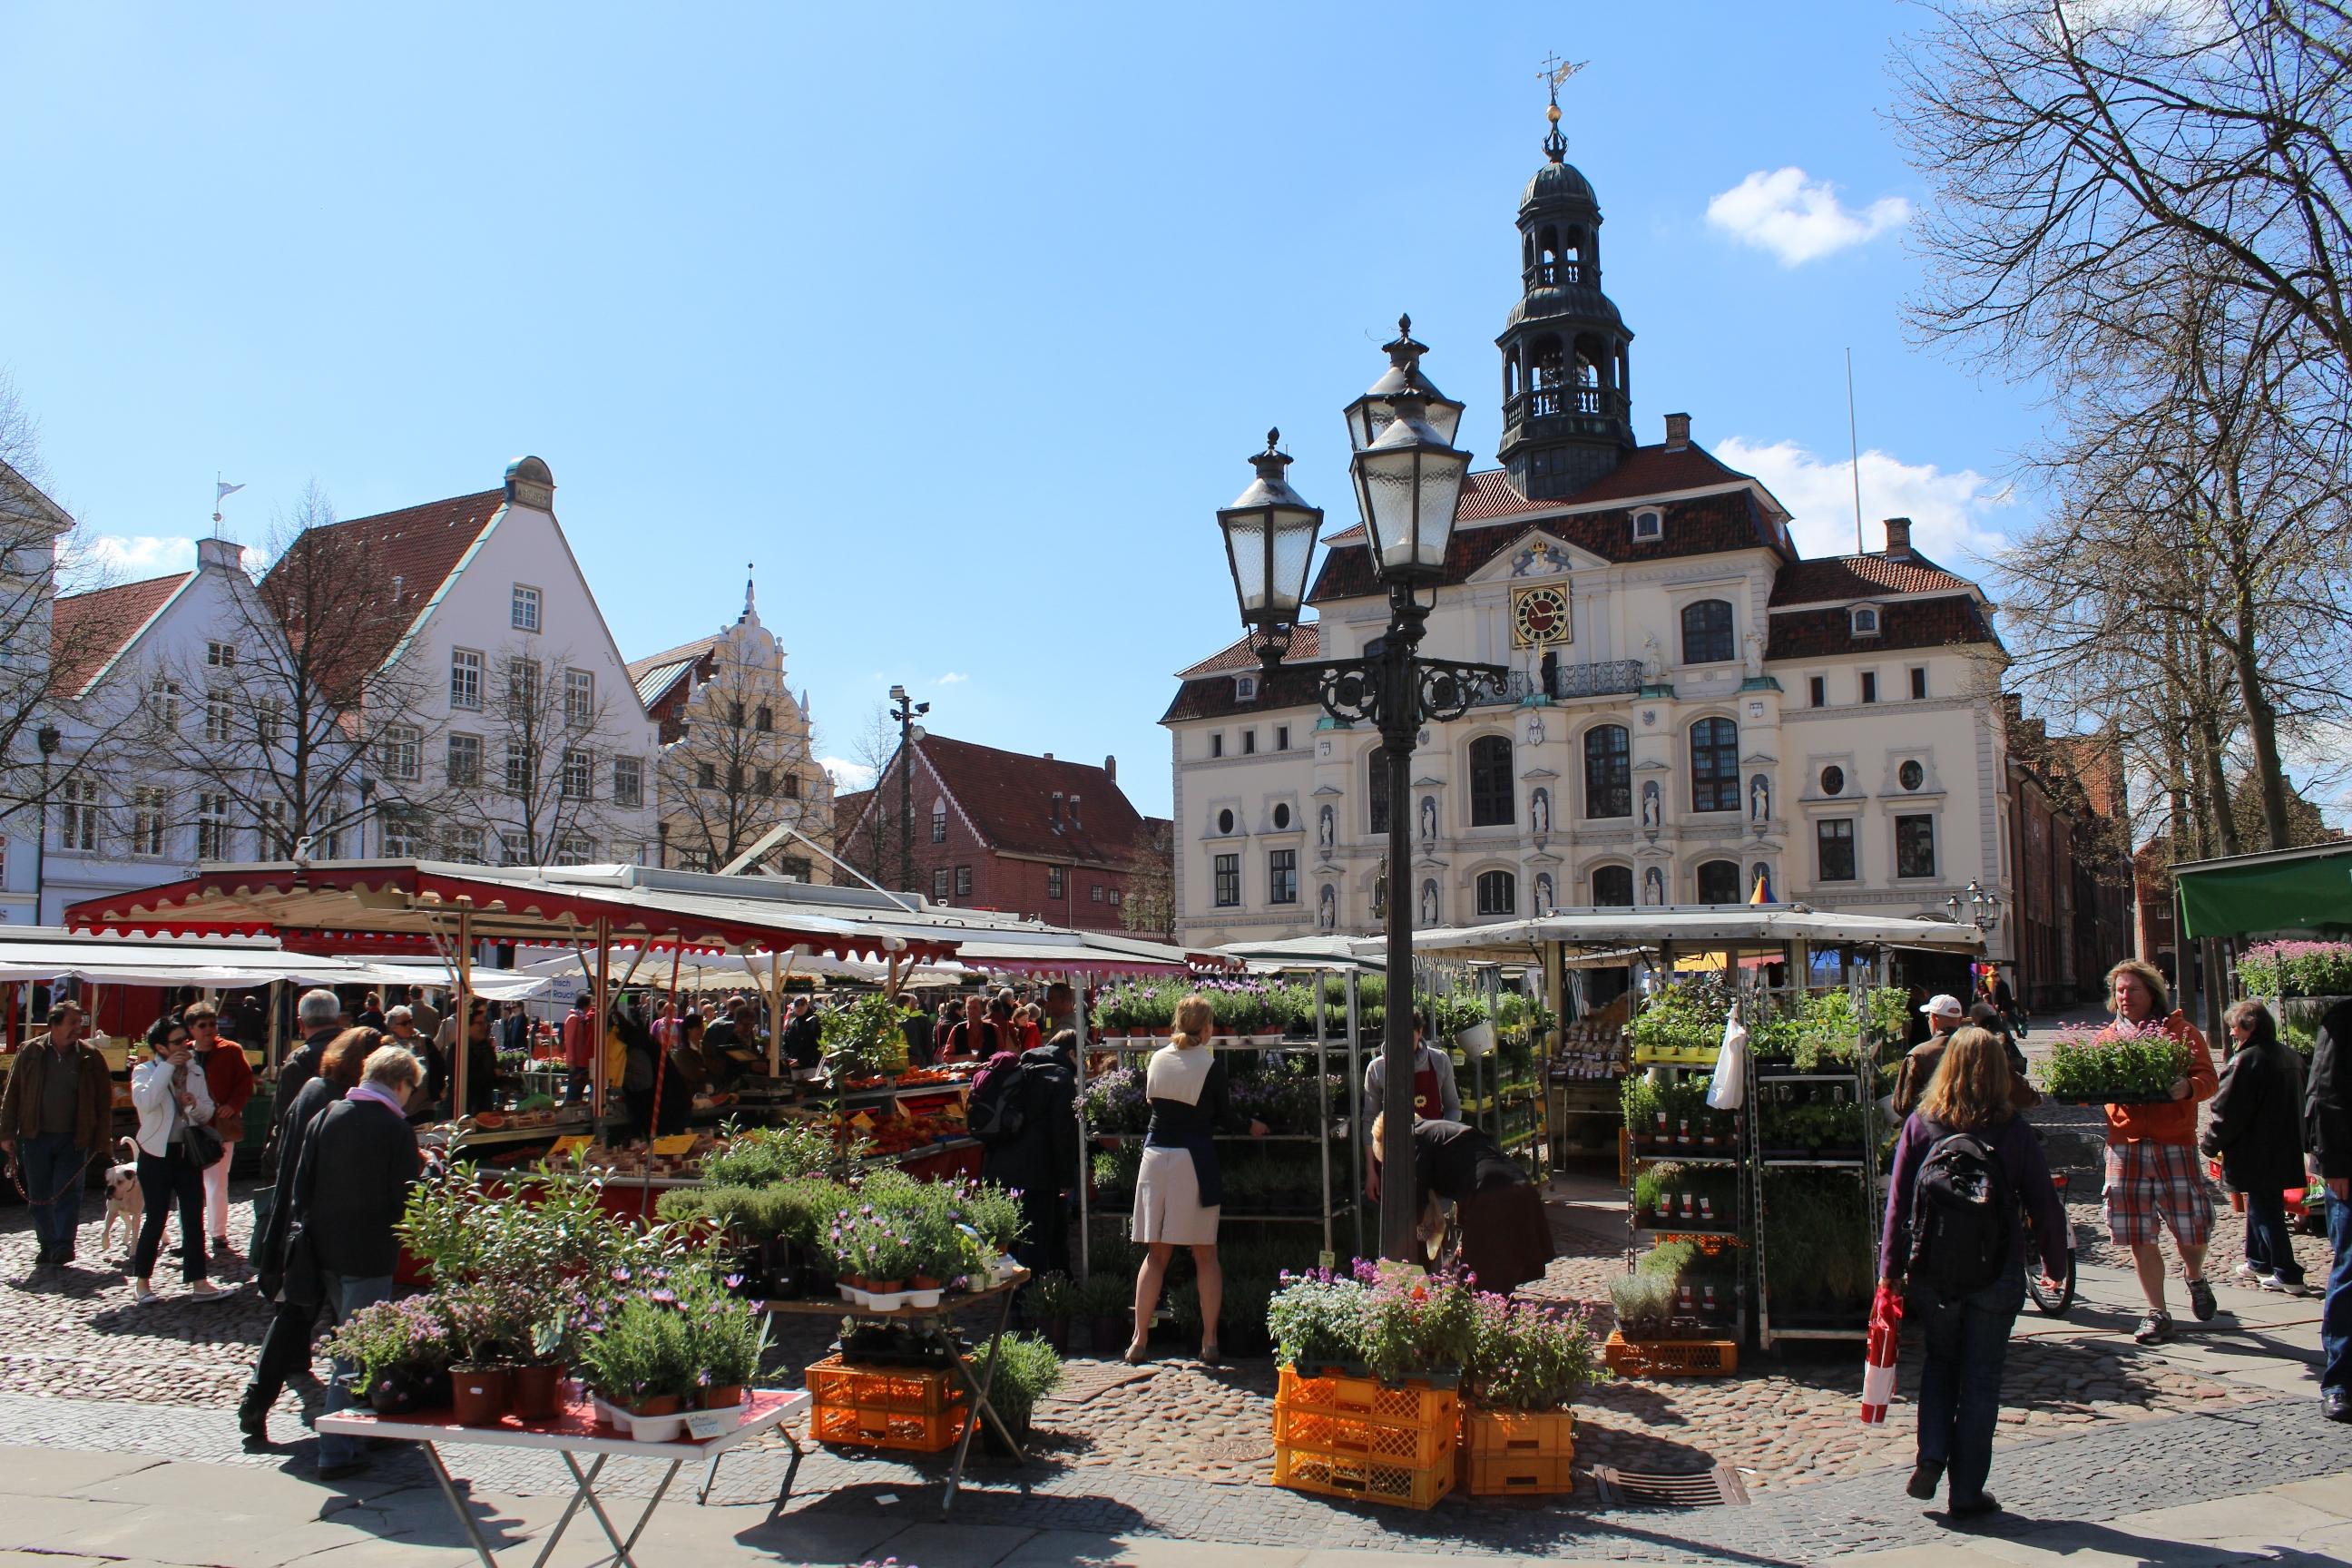 Lüneburg's weekly market